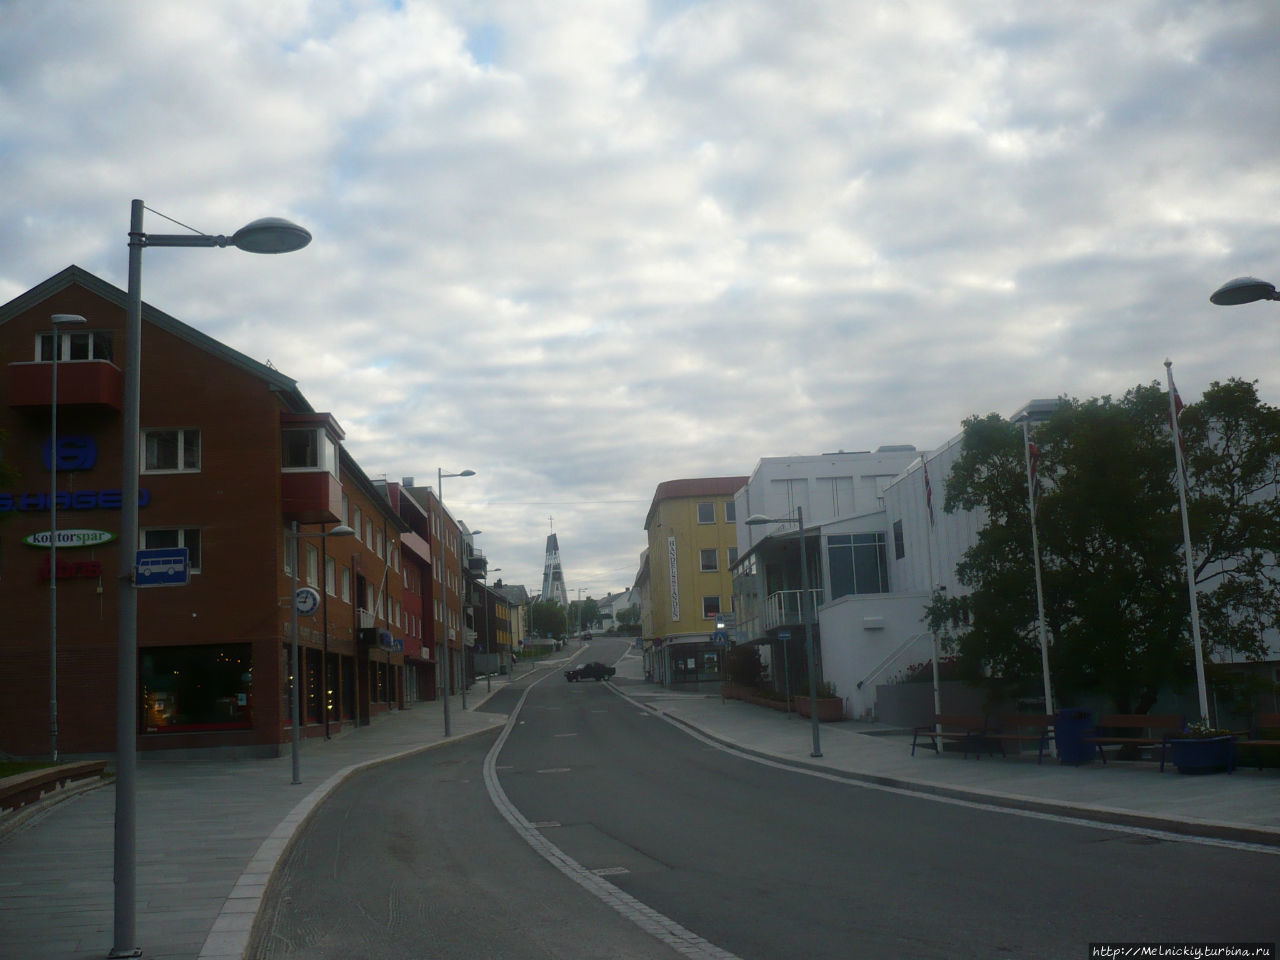 История Хаммерфеста- самого северного города мира Хаммерфест, Норвегия